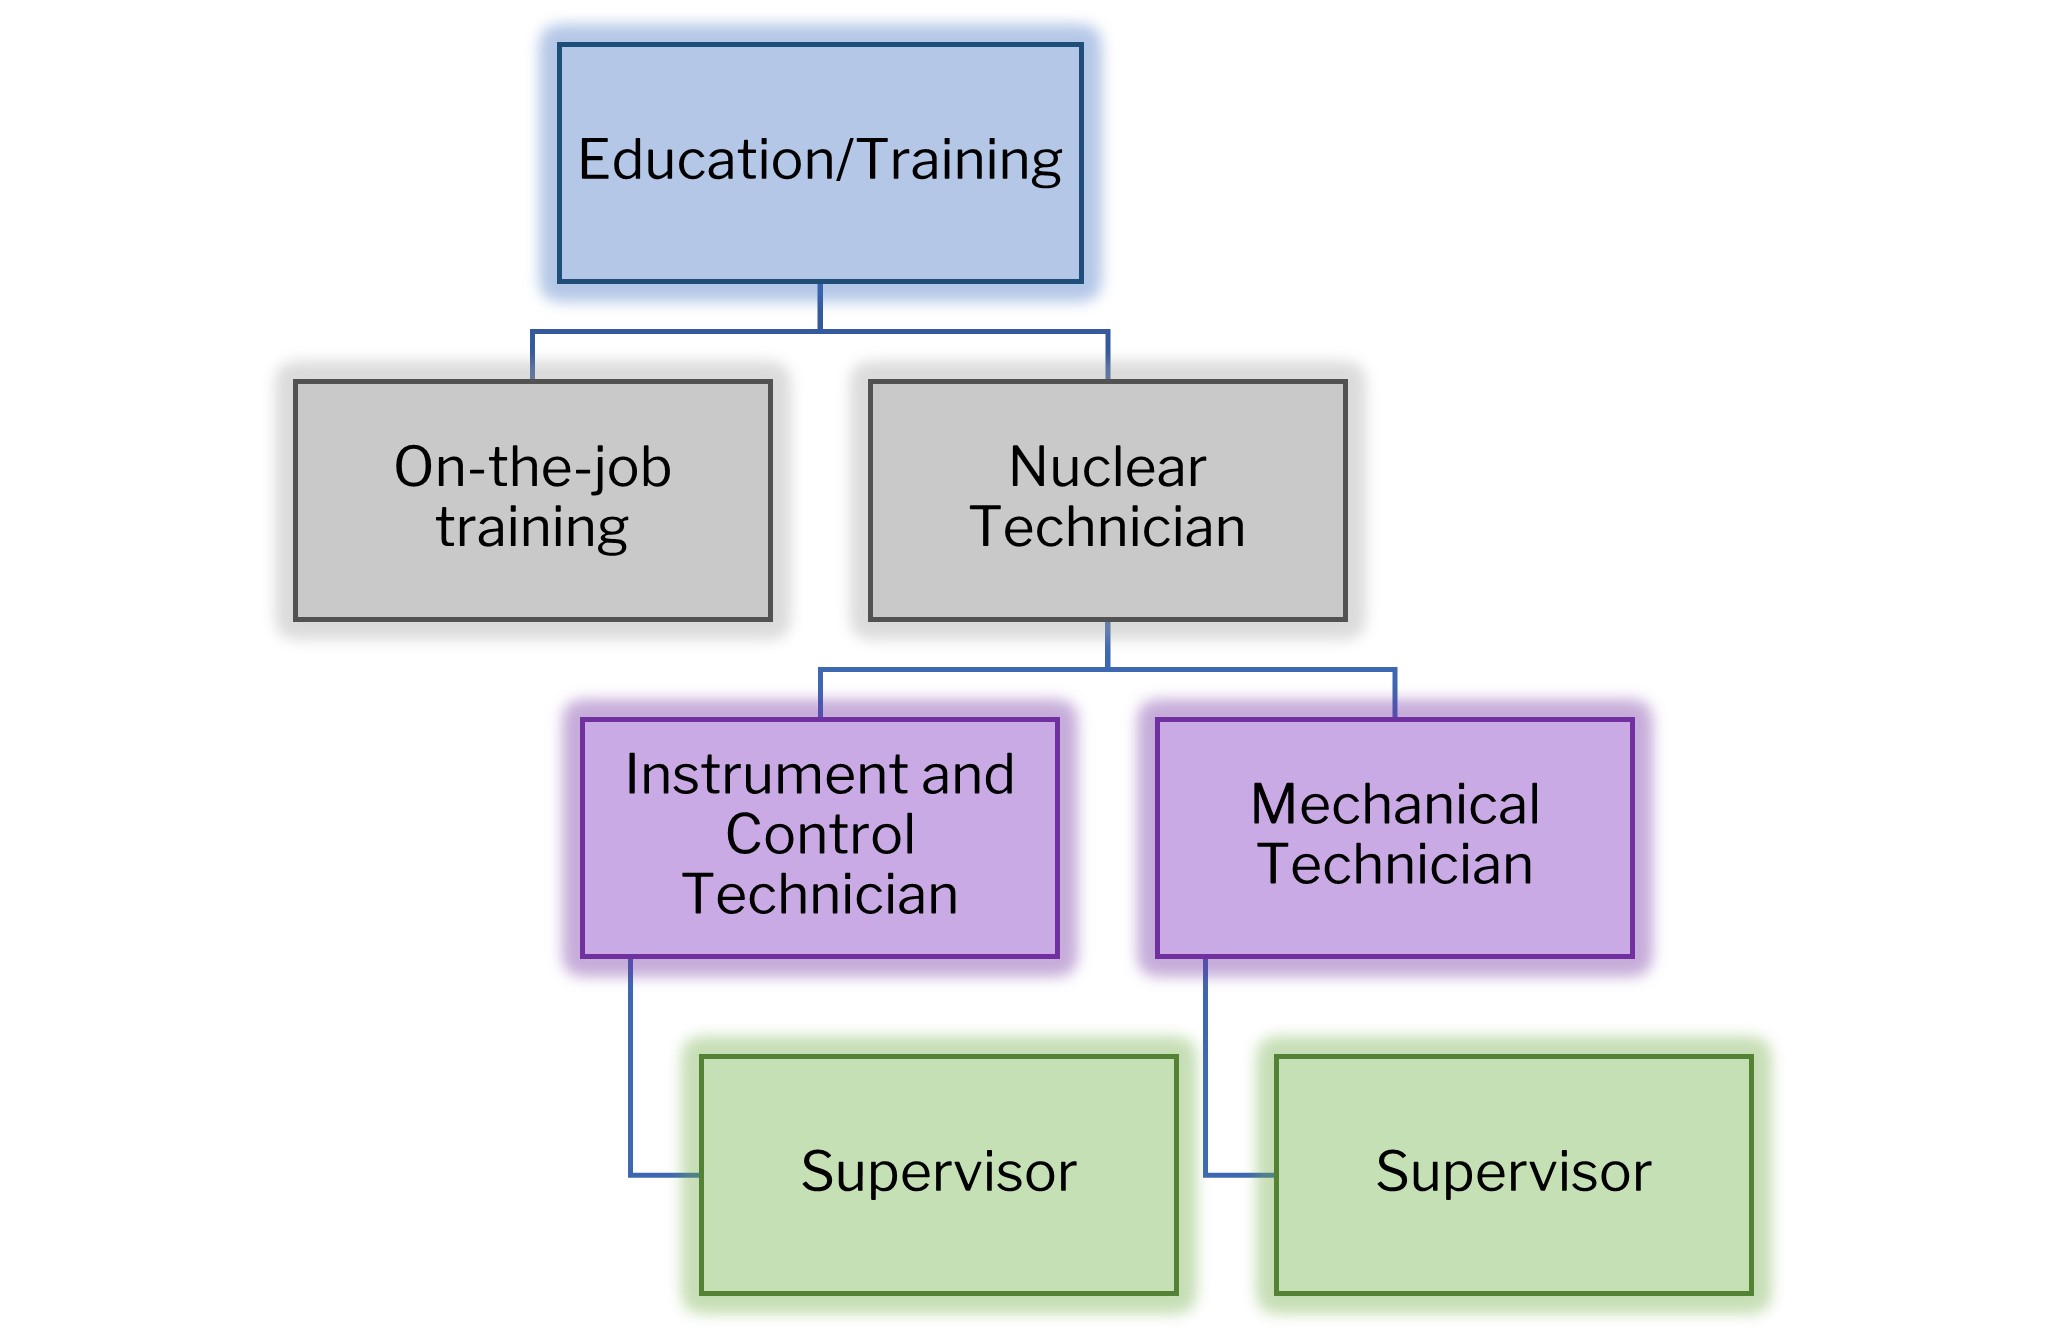 nuclear technician career path